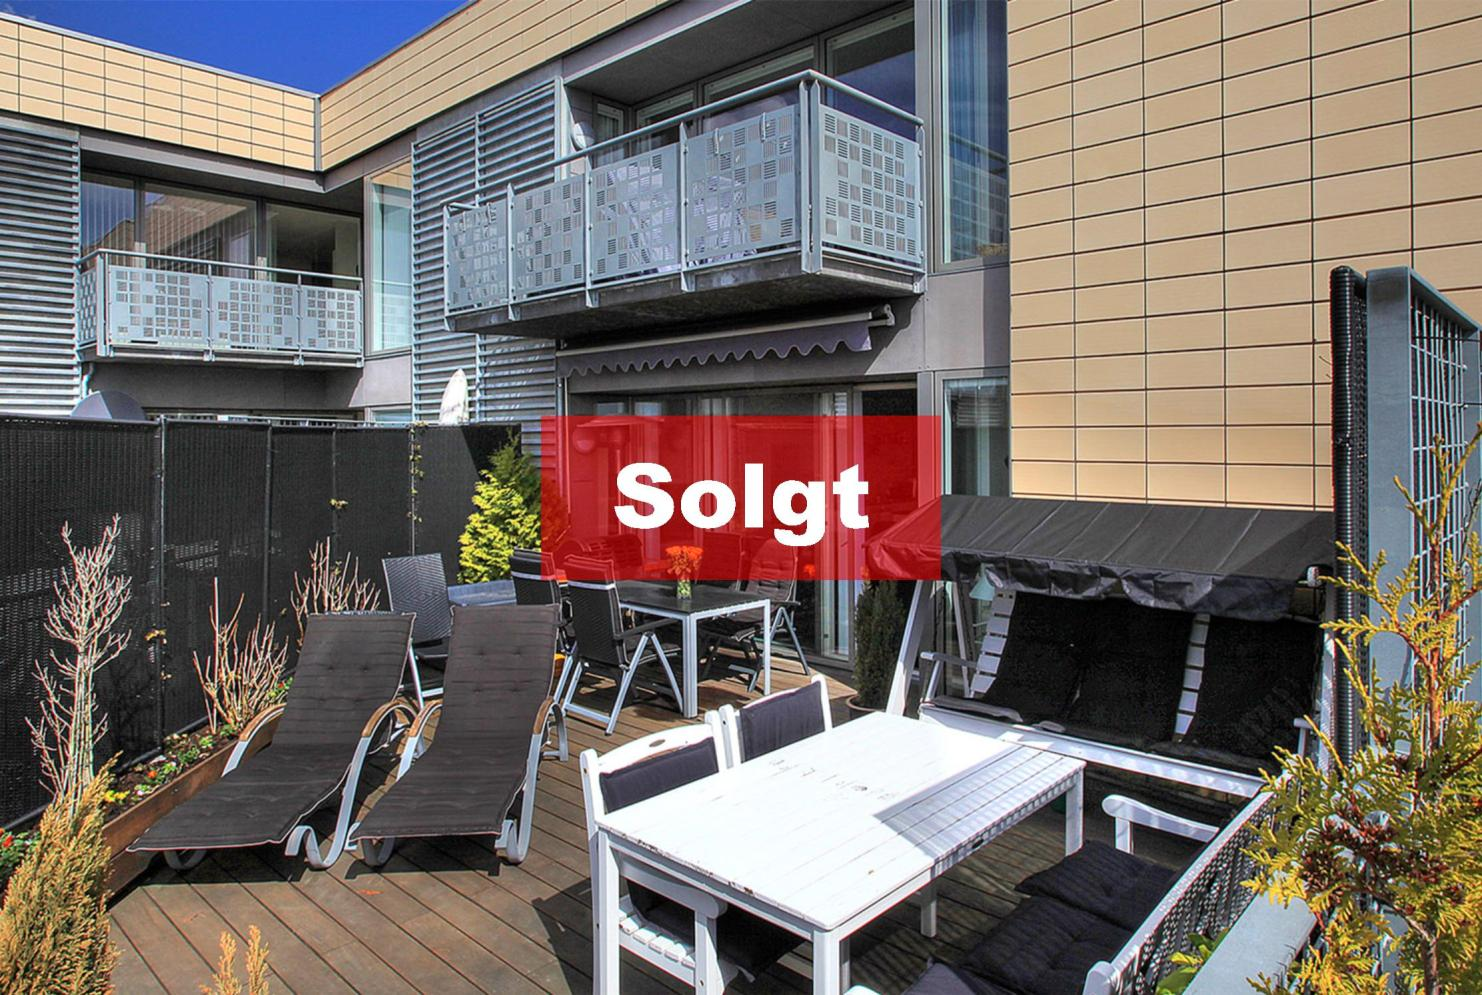 Fantastisk lejlighed med egen terrasse på ca. 36 kvm. Sags nr. 4000-561 Ros Have 18, 1.9.